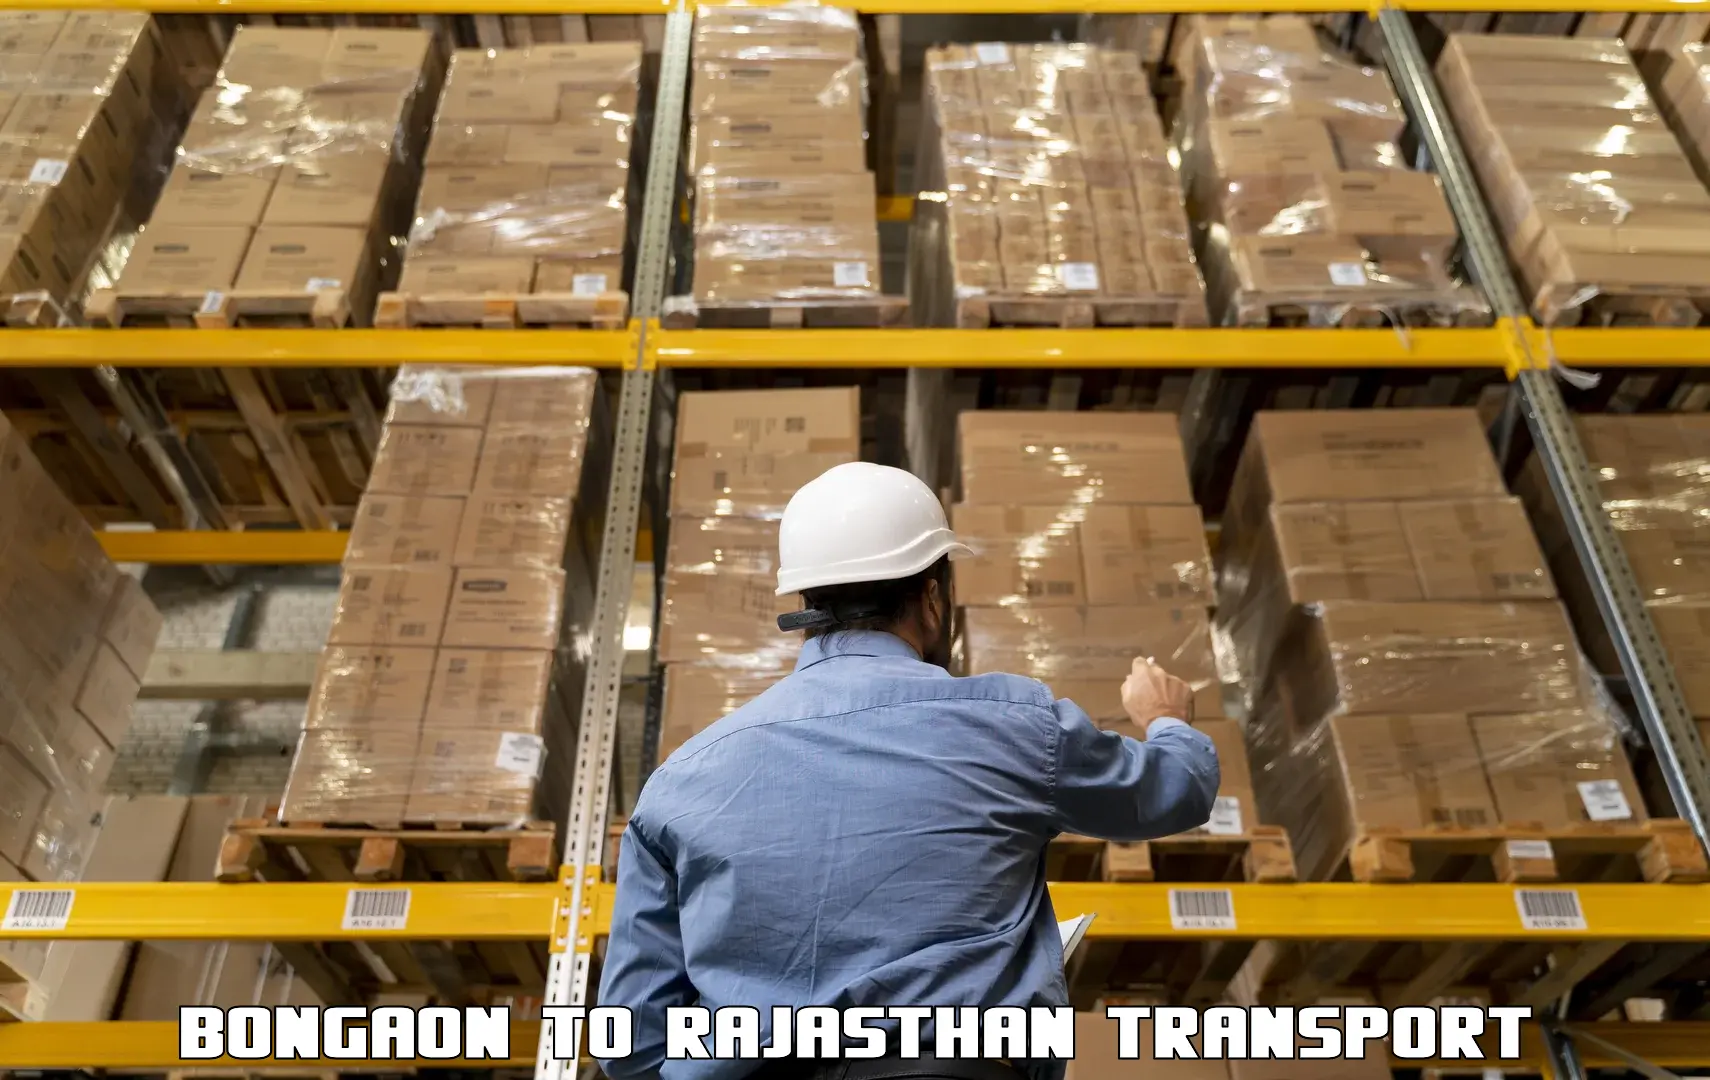 Online transport service Bongaon to Kapasan